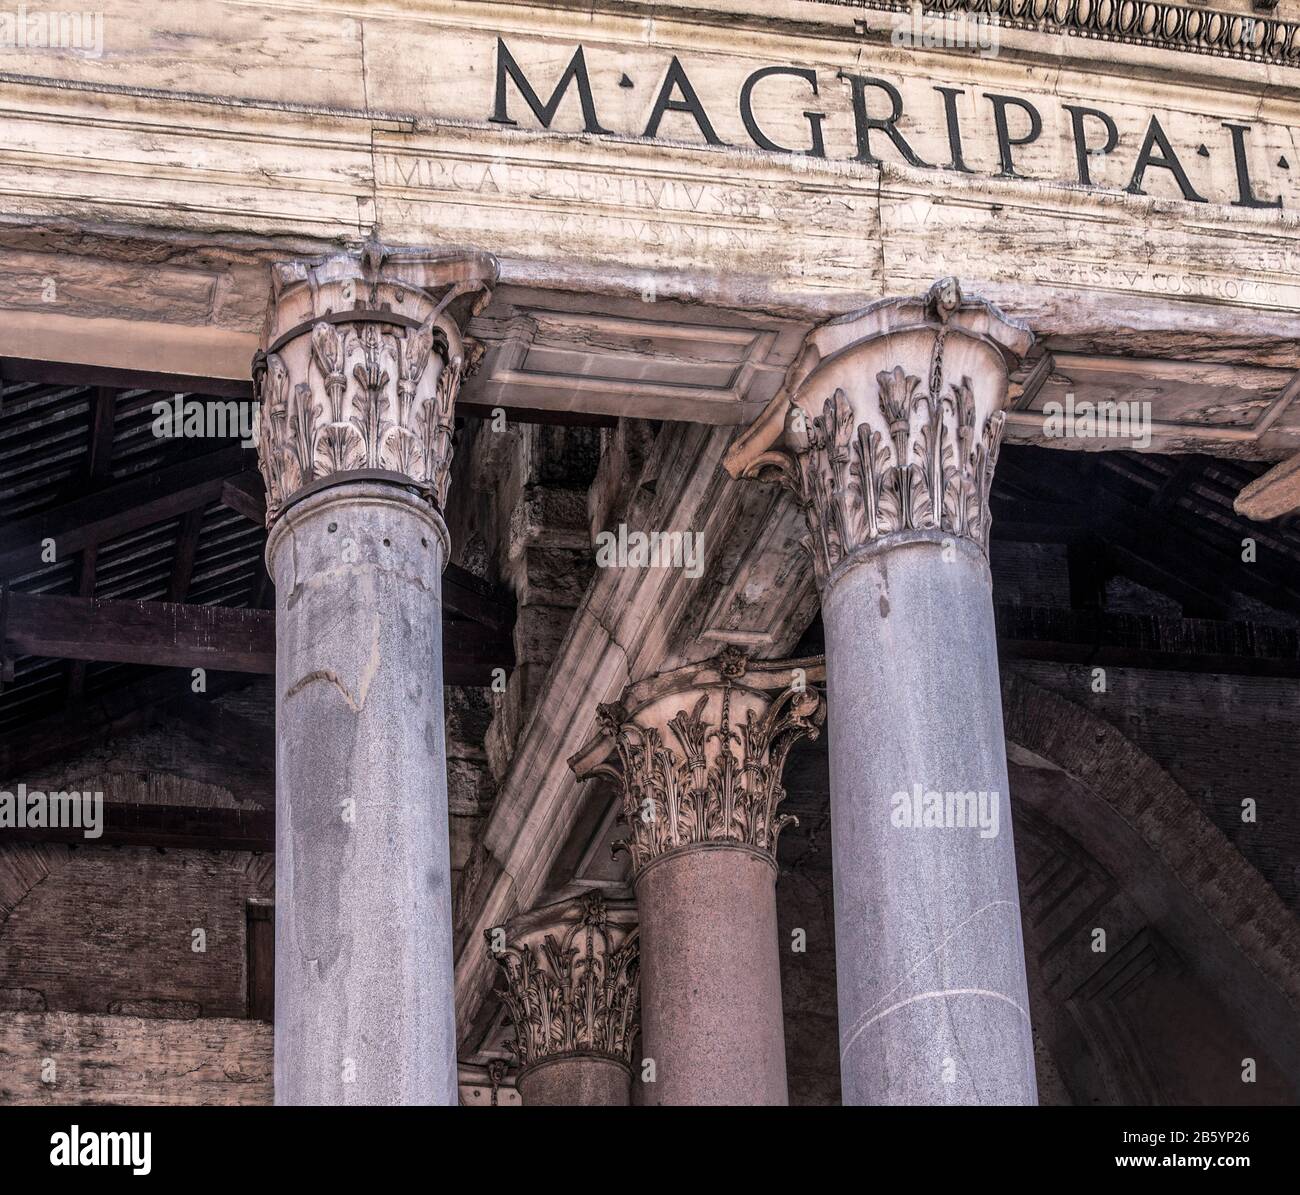 Italy.Rome.The Pantheon is in the Piazza della rotonda. Costruito dall'Imperatore Adriano '120 d.C.' ha una cupola molto suggestiva. Foto Stock